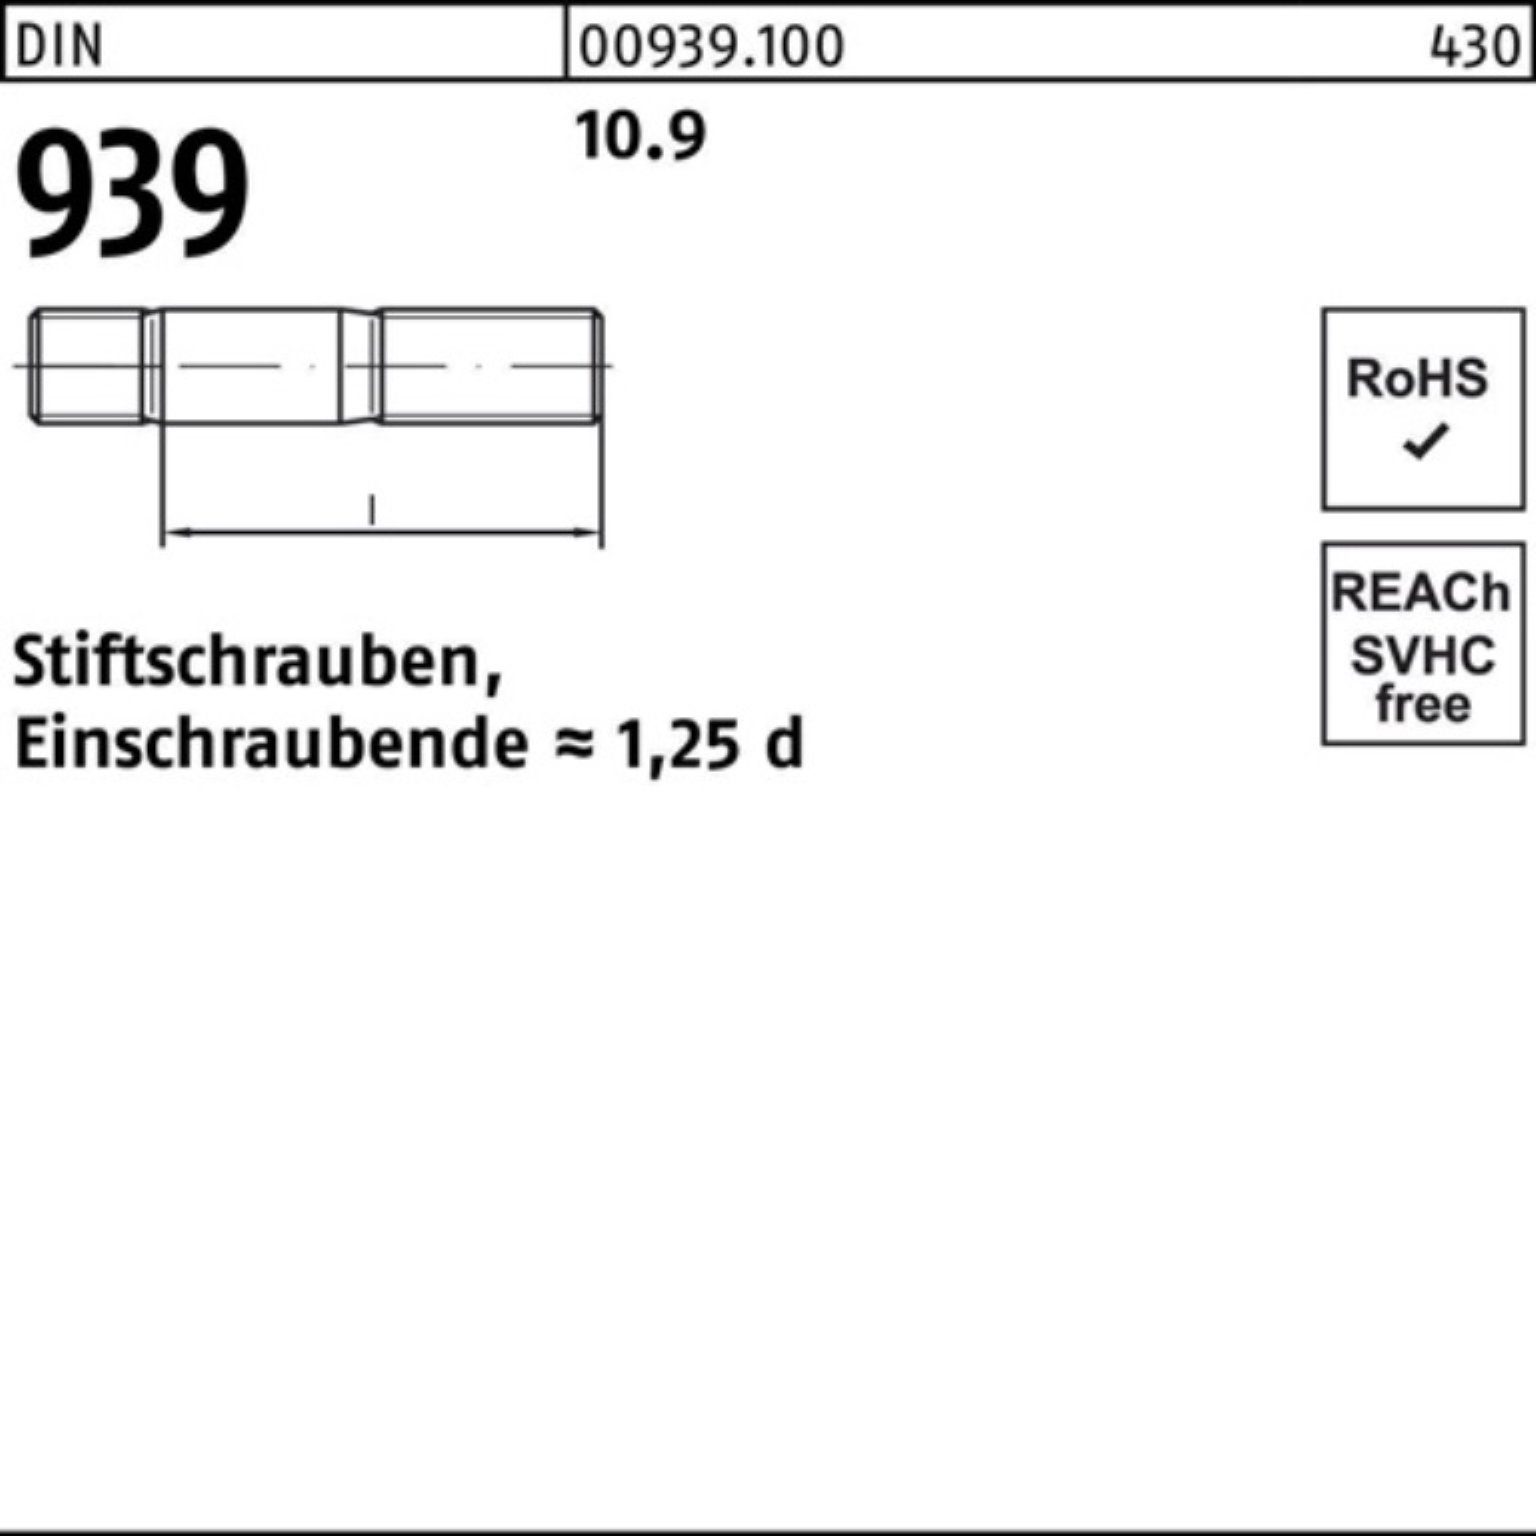 Reyher Stiftschraube 100er Pack Stiftschraube 939 70 10.9 50 DIN Einschraubende=1,25d M10x